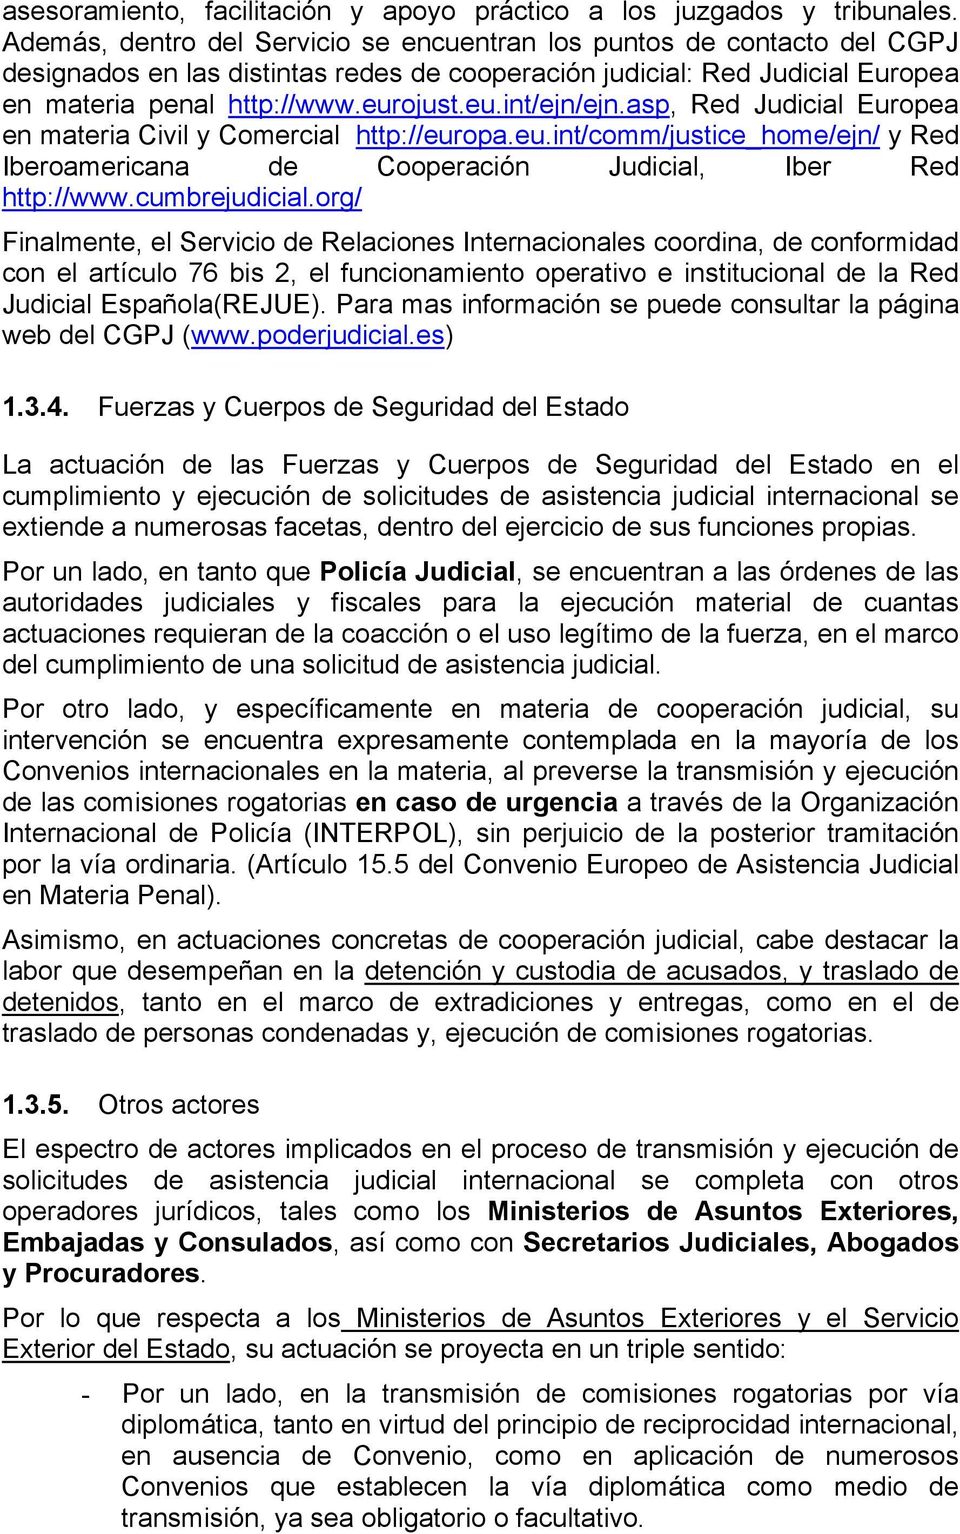 asp, Red Judicial Europea en materia Civil y Comercial http://europa.eu.int/comm/justice_home/ejn/ y Red Iberoamericana de Cooperación Judicial, Iber Red http://www.cumbrejudicial.